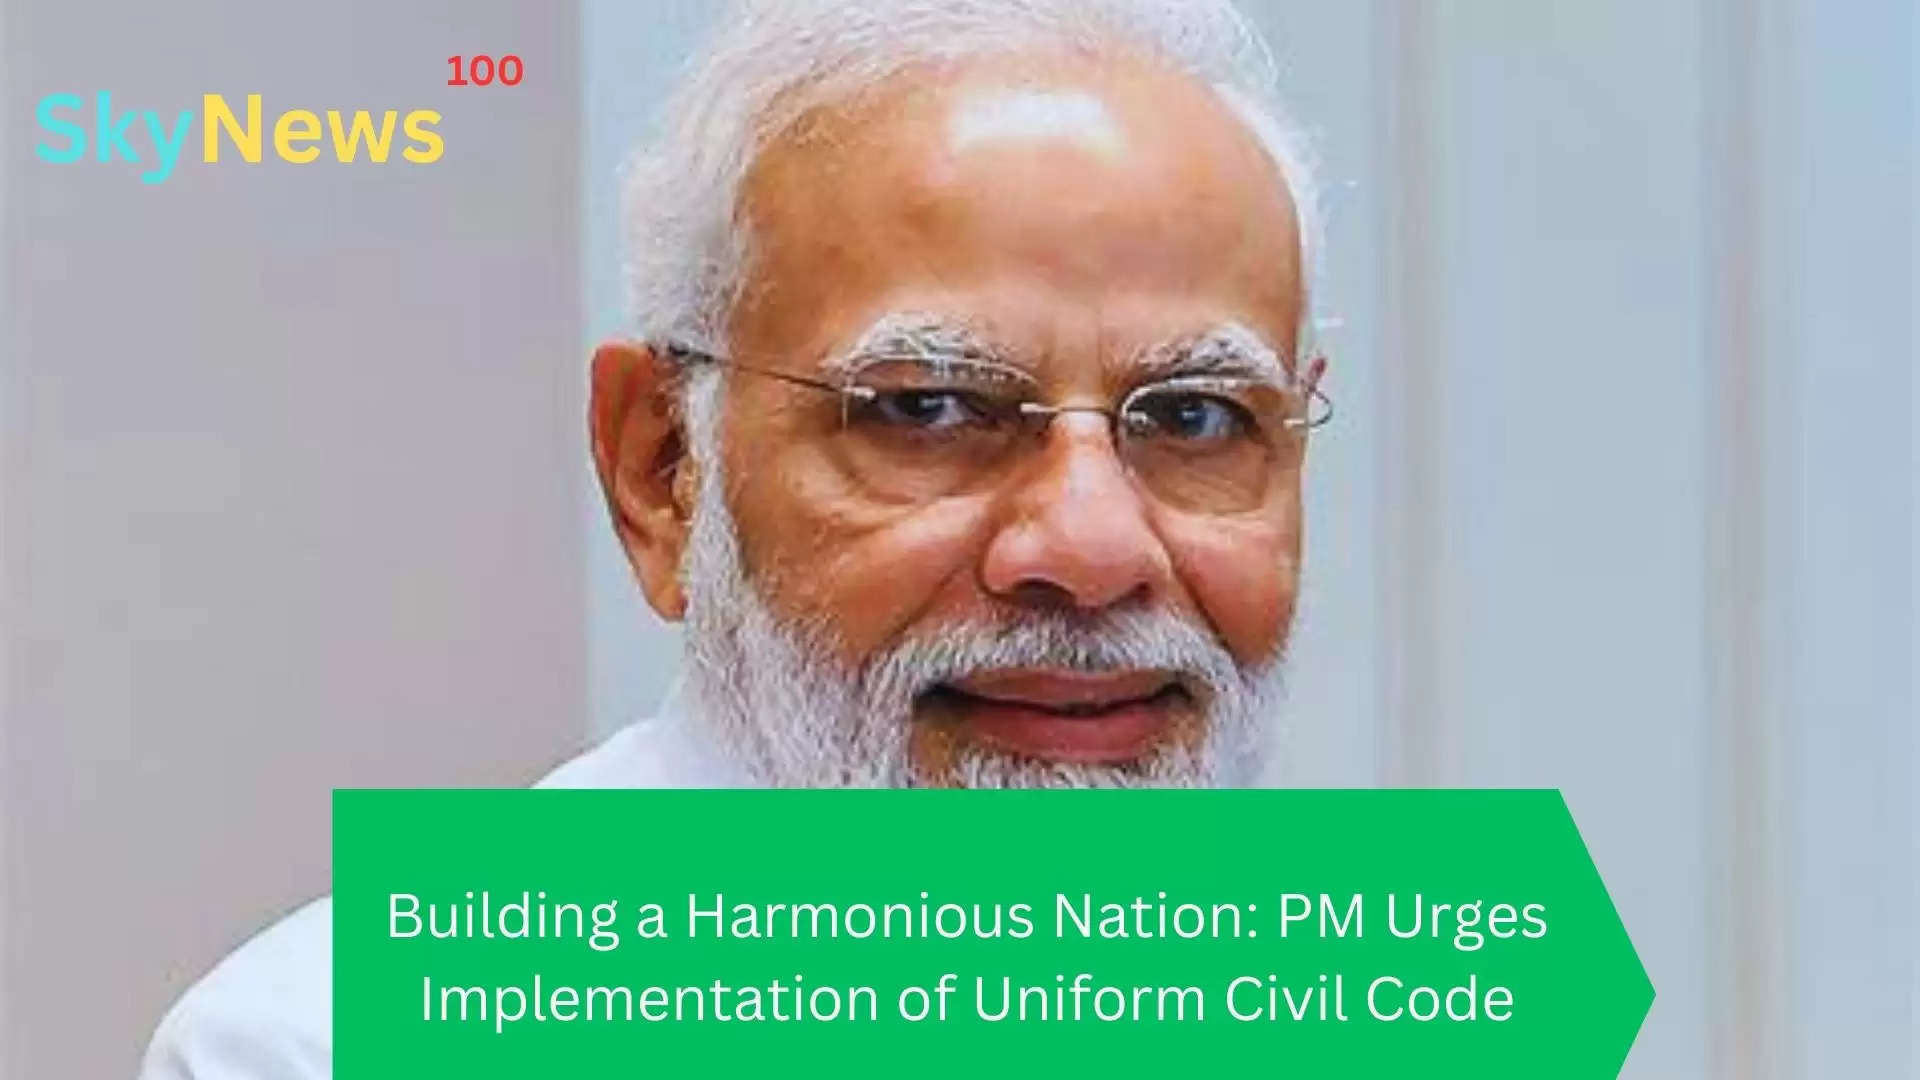 Building a Harmonious Nation: PM Urges Implementation of Uniform Civil Code